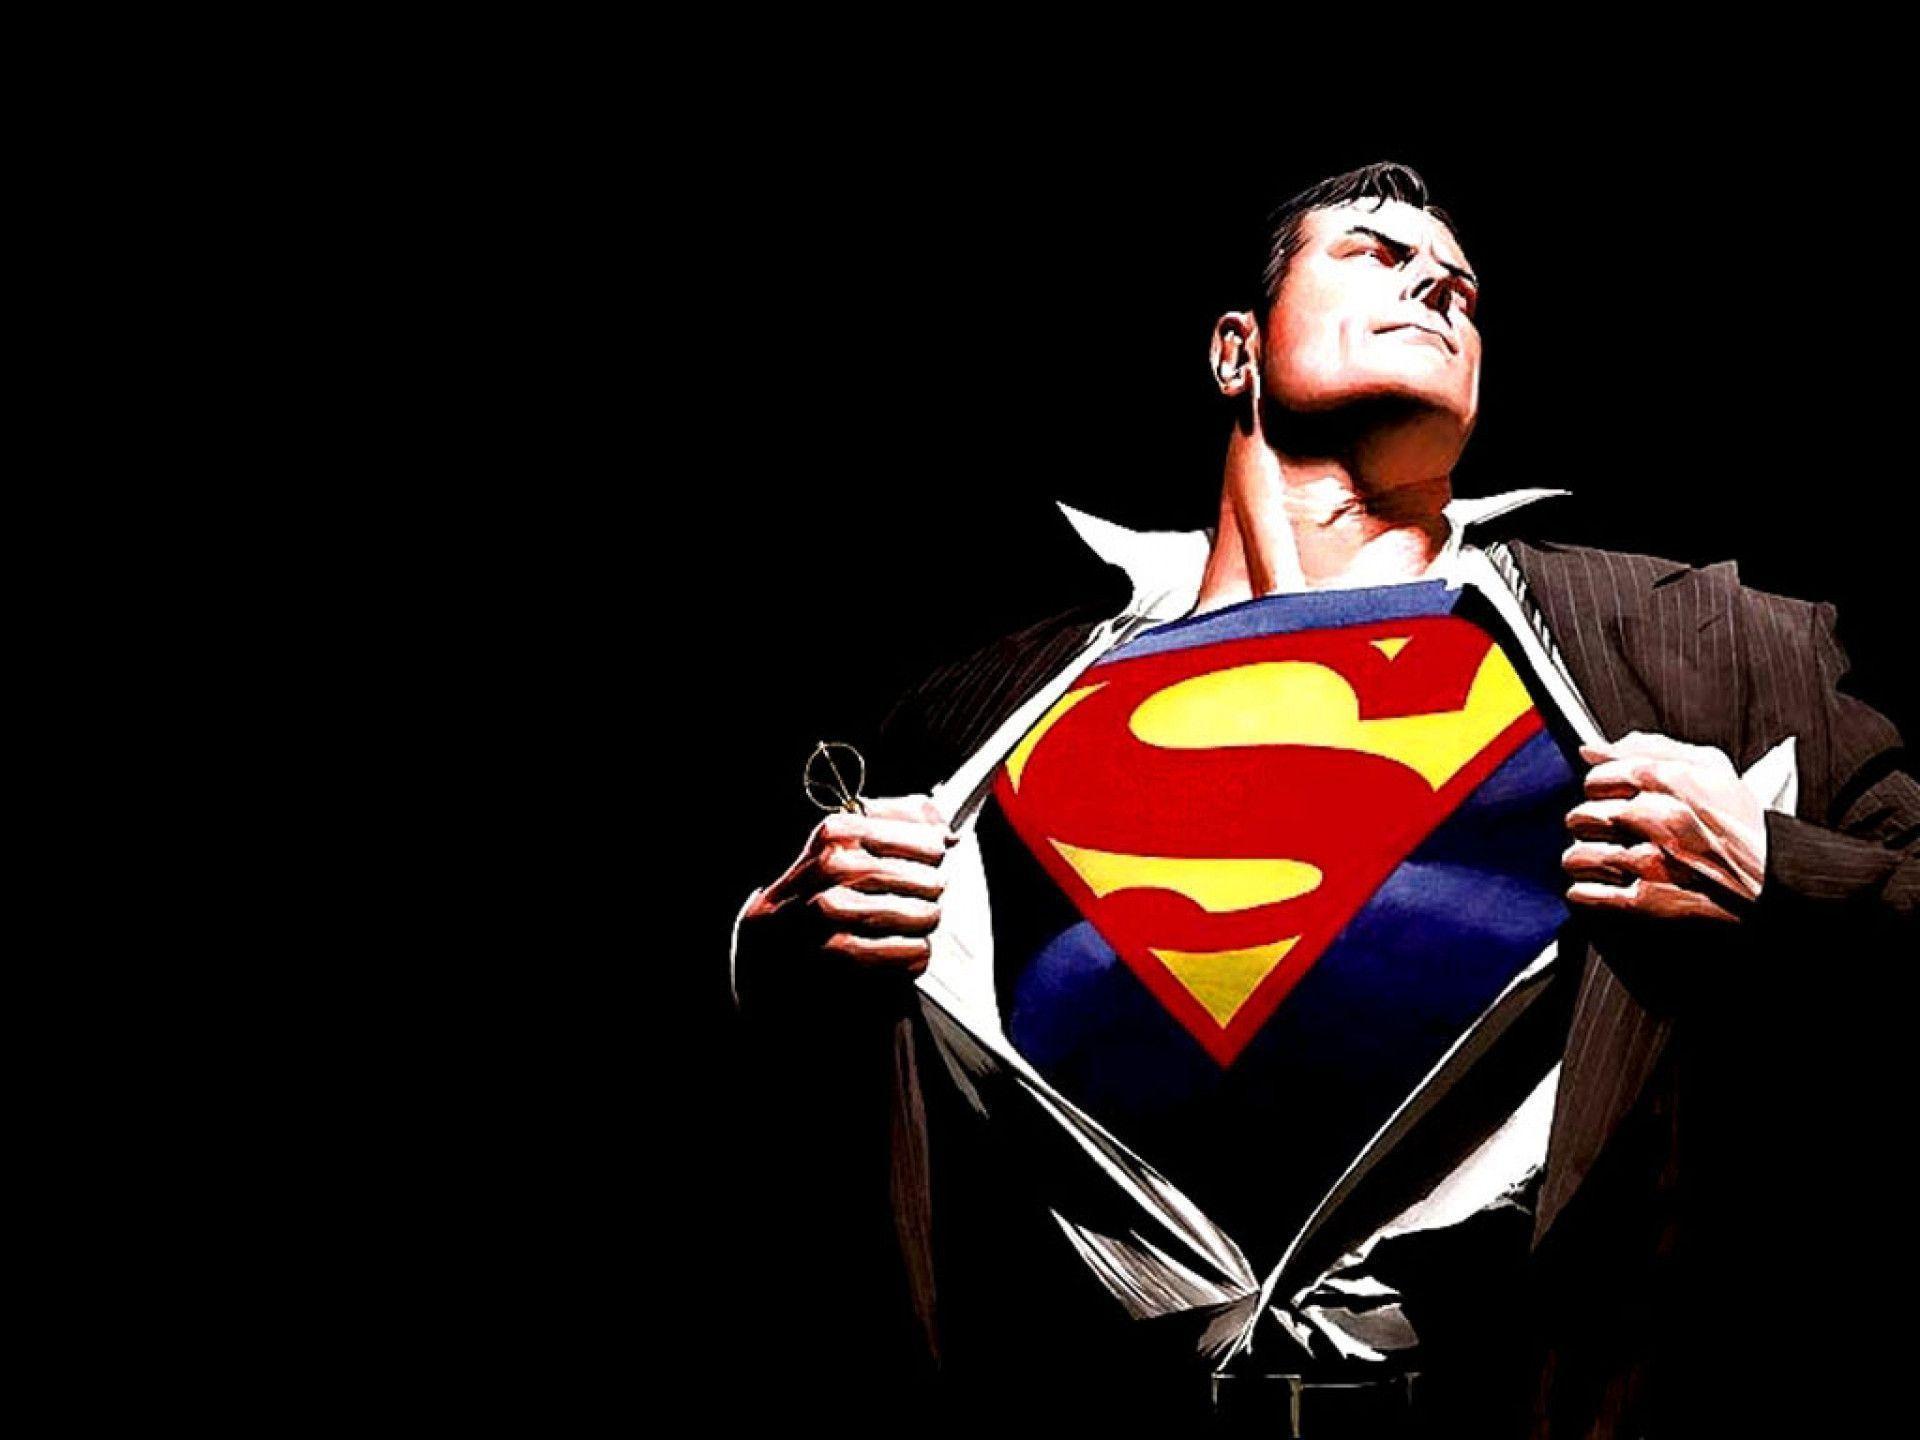 Comics superman wallpaper Full HD. | Superman wallpaper, Cool superman  wallpapers, Superman hd wallpaper